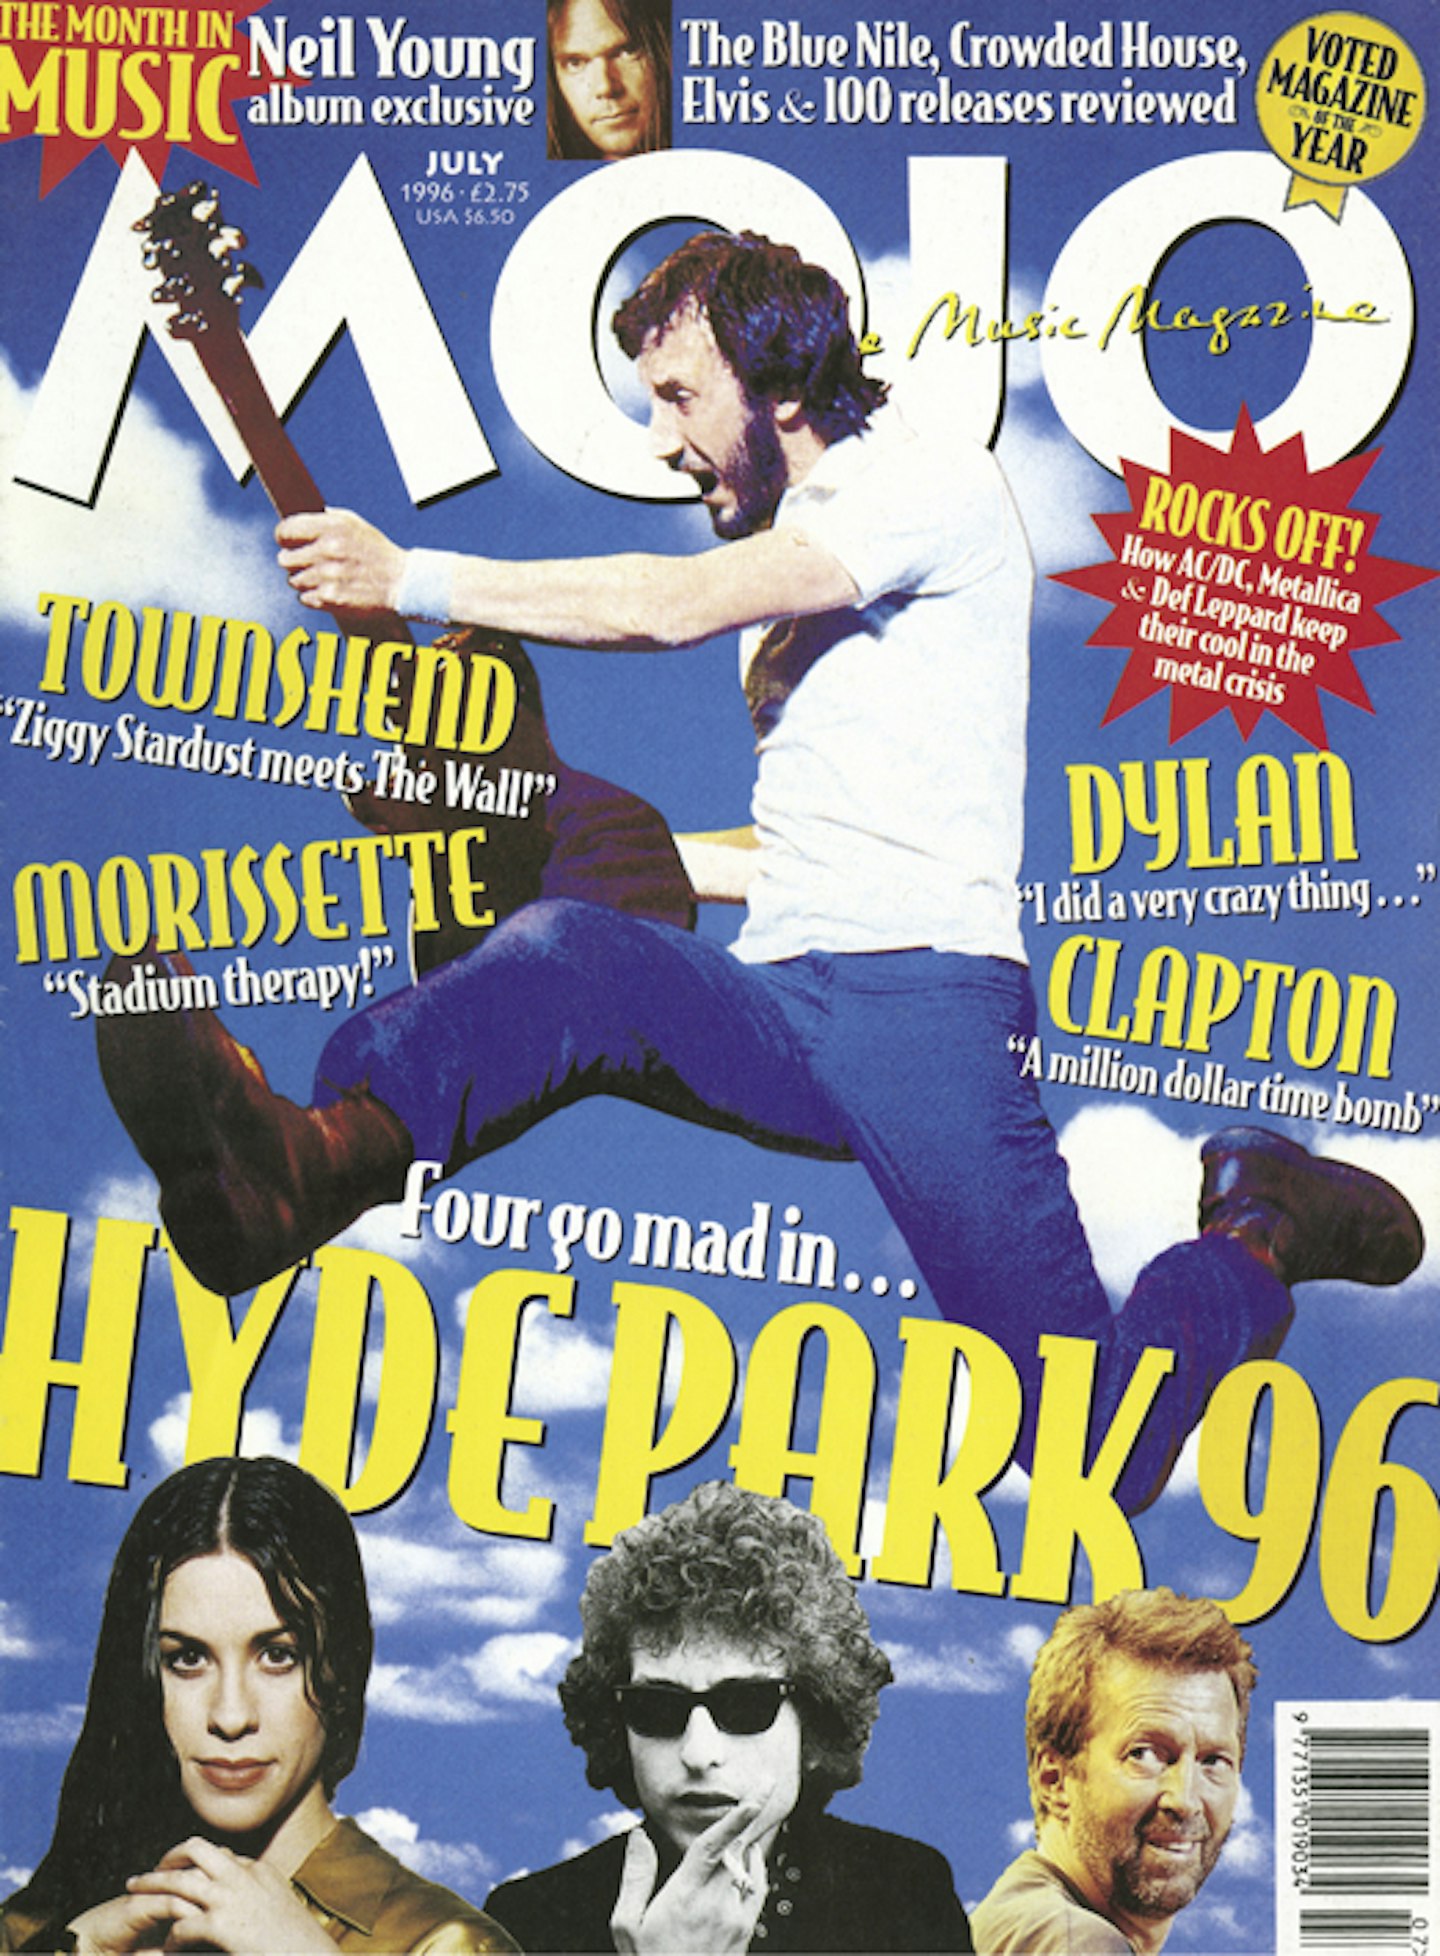 MOJO Issue 32 / July 1996